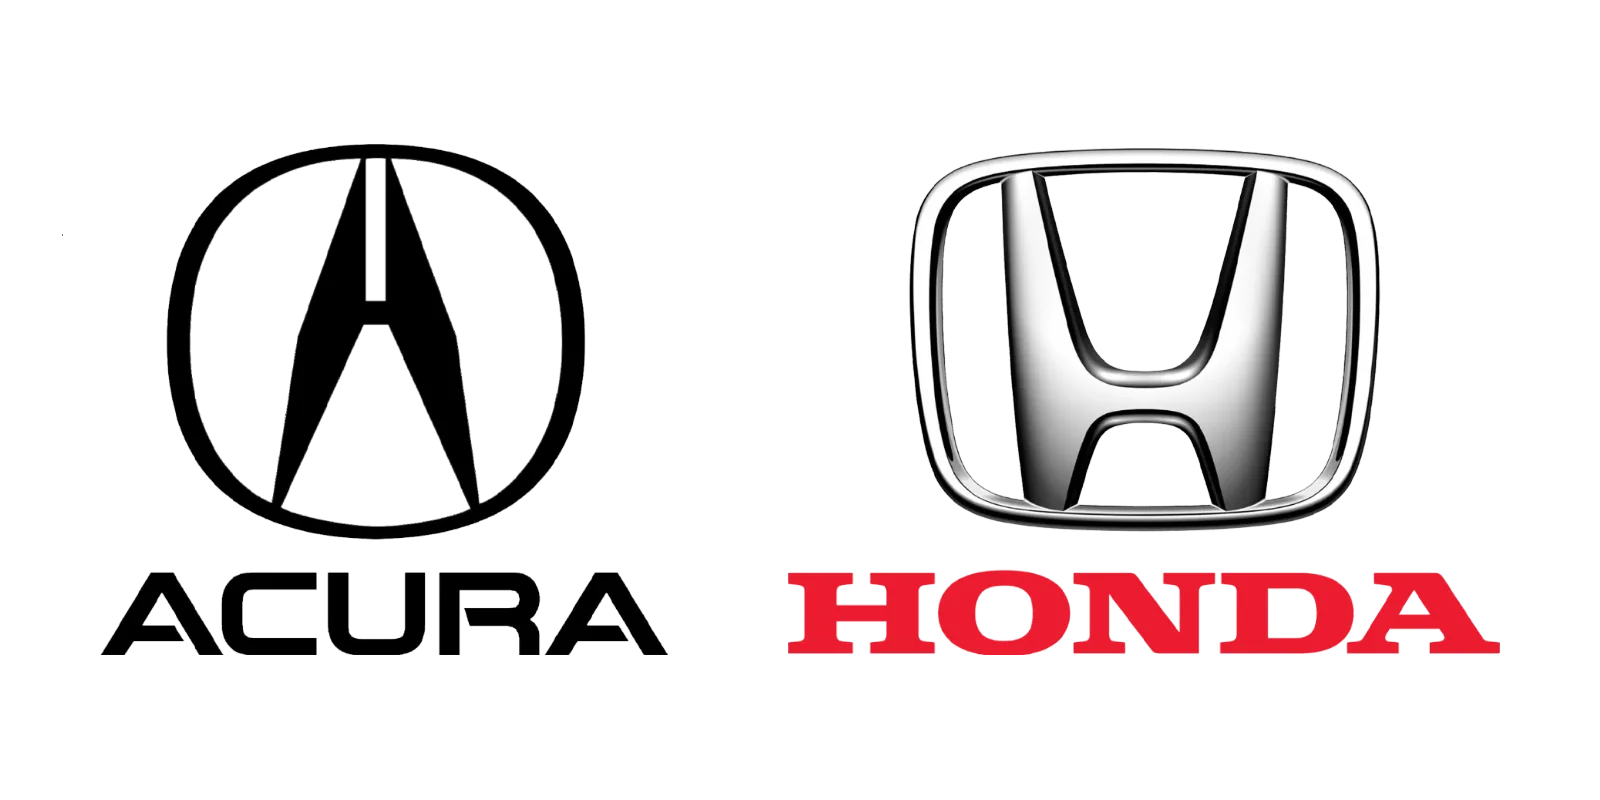 Acura Honda